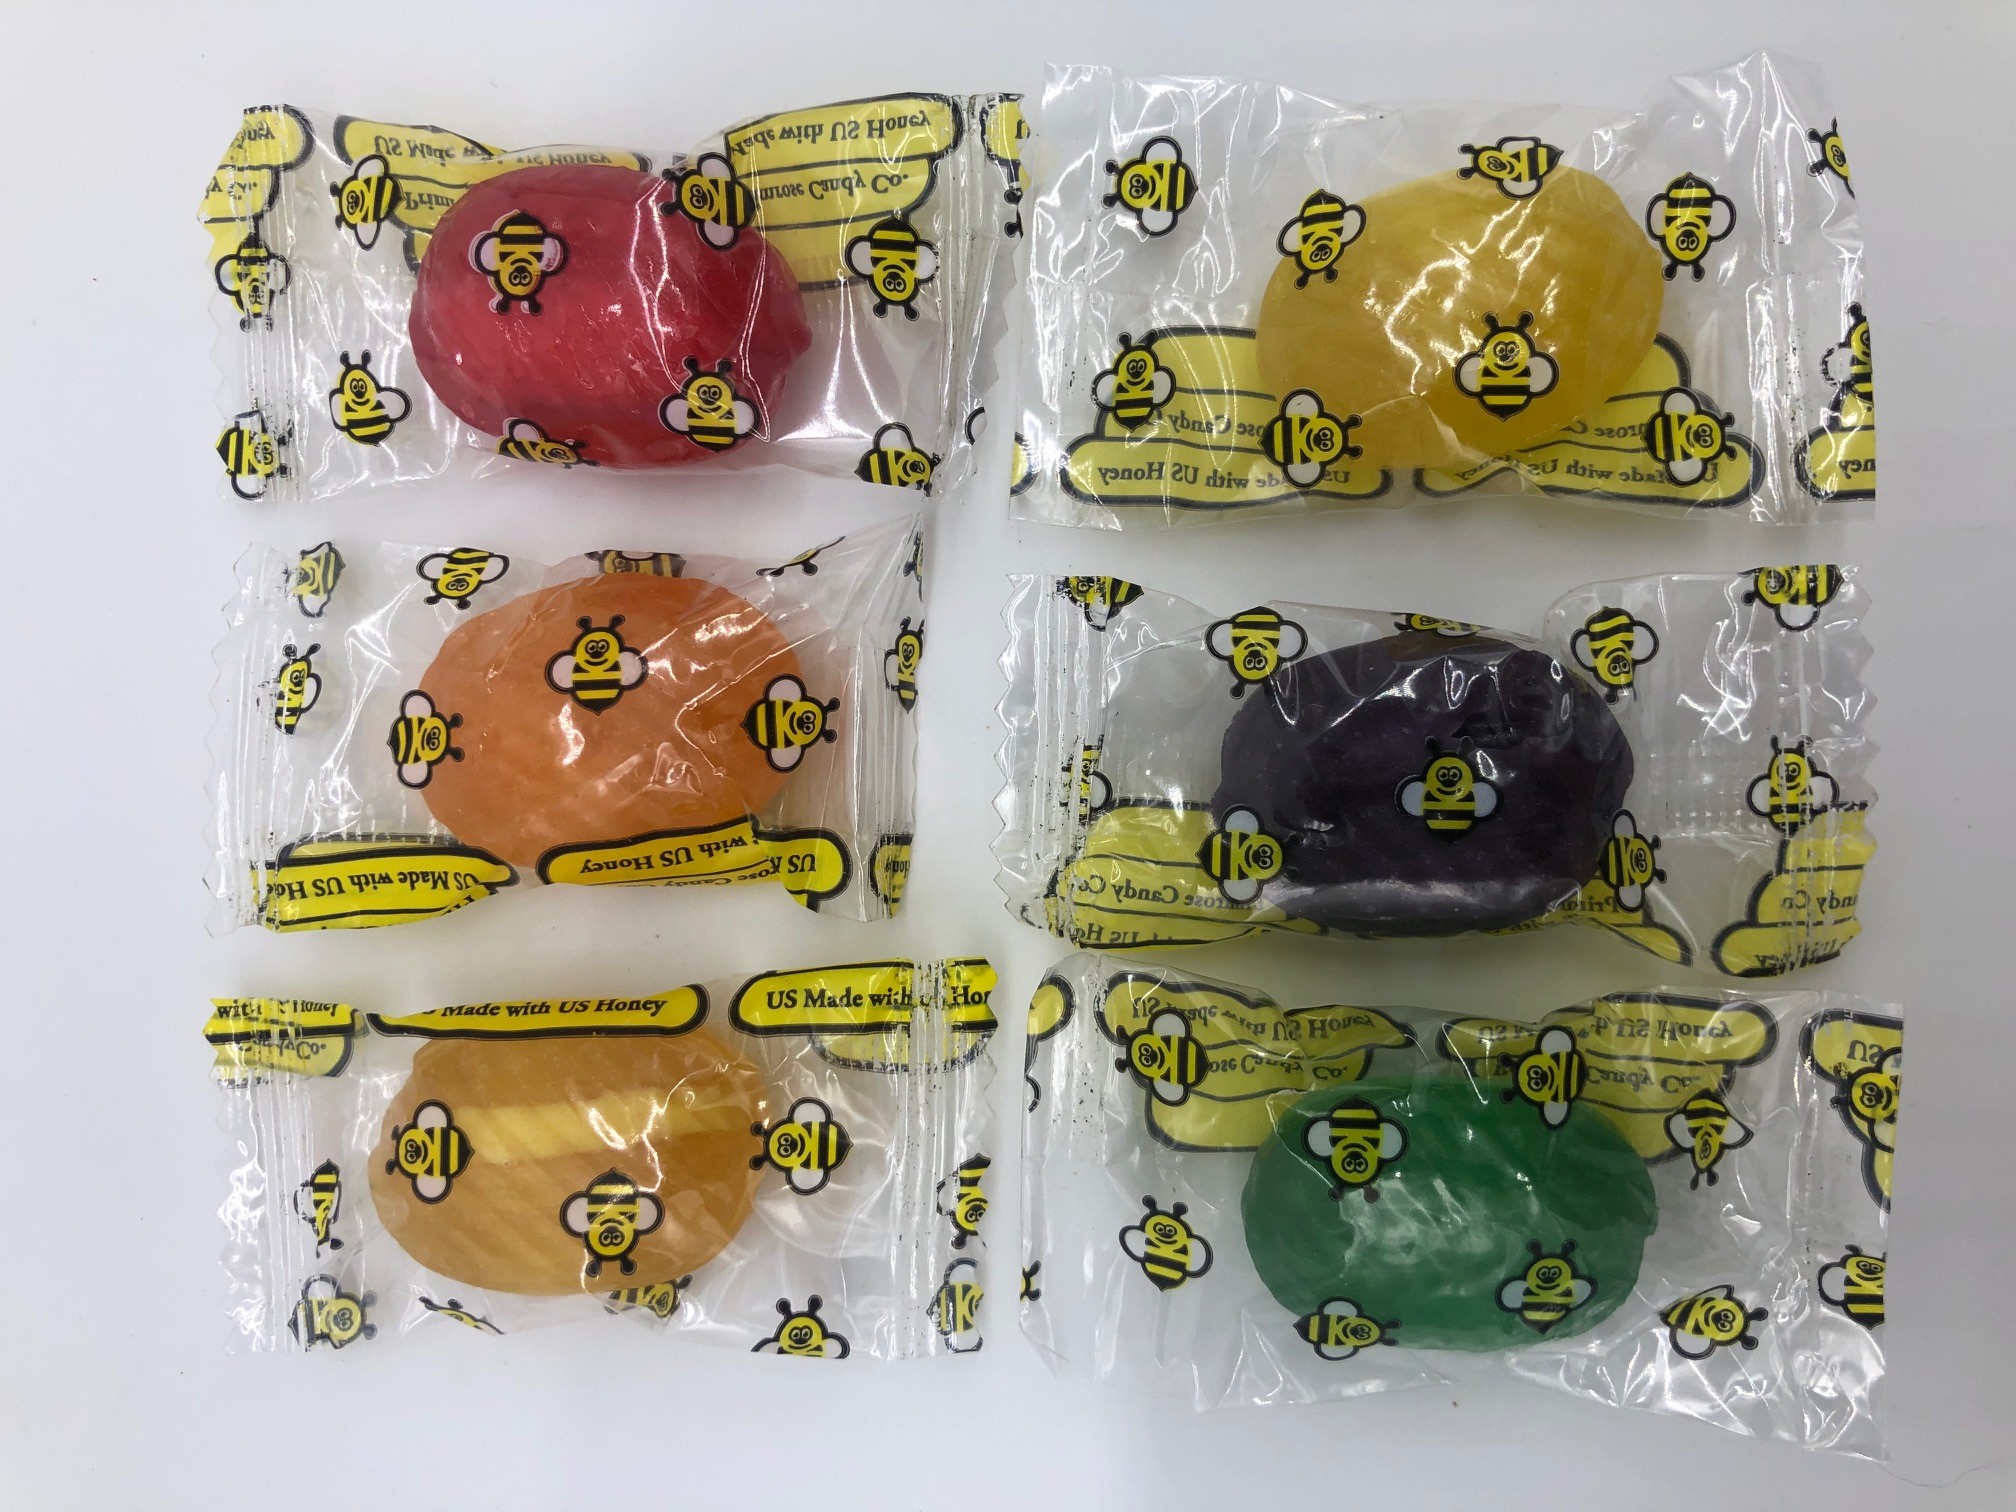 Honey Filled Candy - 1 lb (454 g) Bag